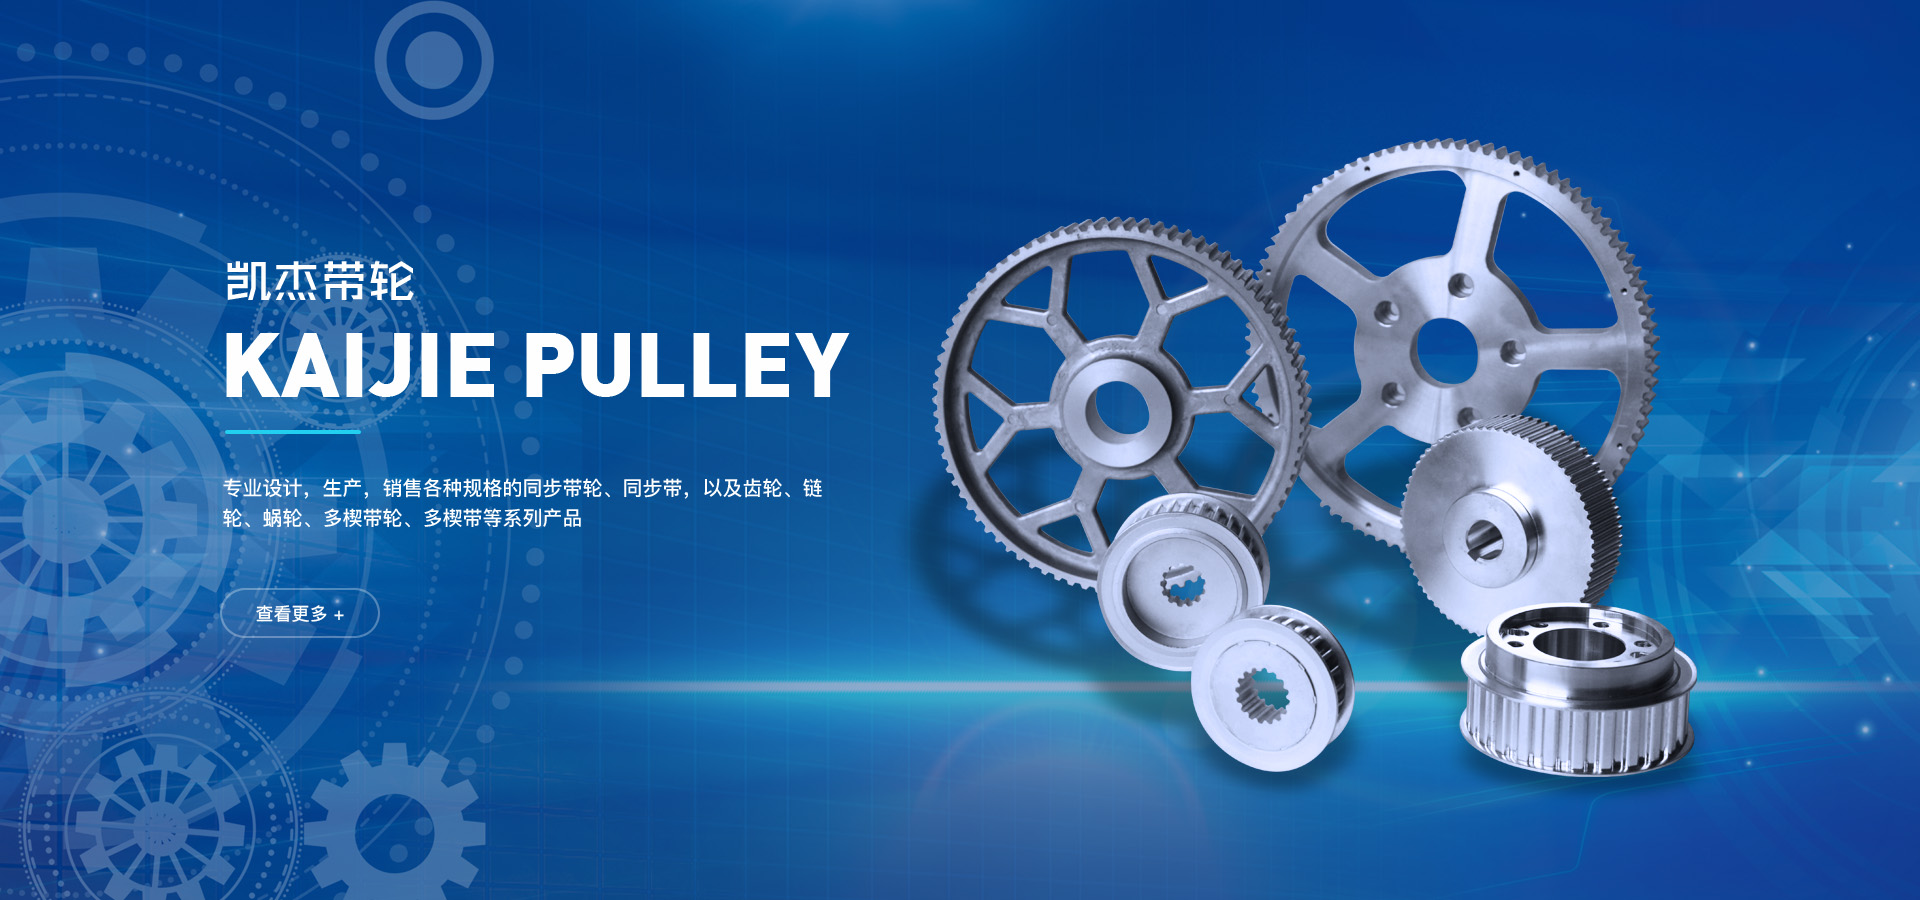 寧波凱杰帶輪有限公司專業生產各種規格的同步帶輪、同步輪、同步帶以及齒輪、鏈輪、蝸輪、多楔帶輪、多楔帶等系列產品。